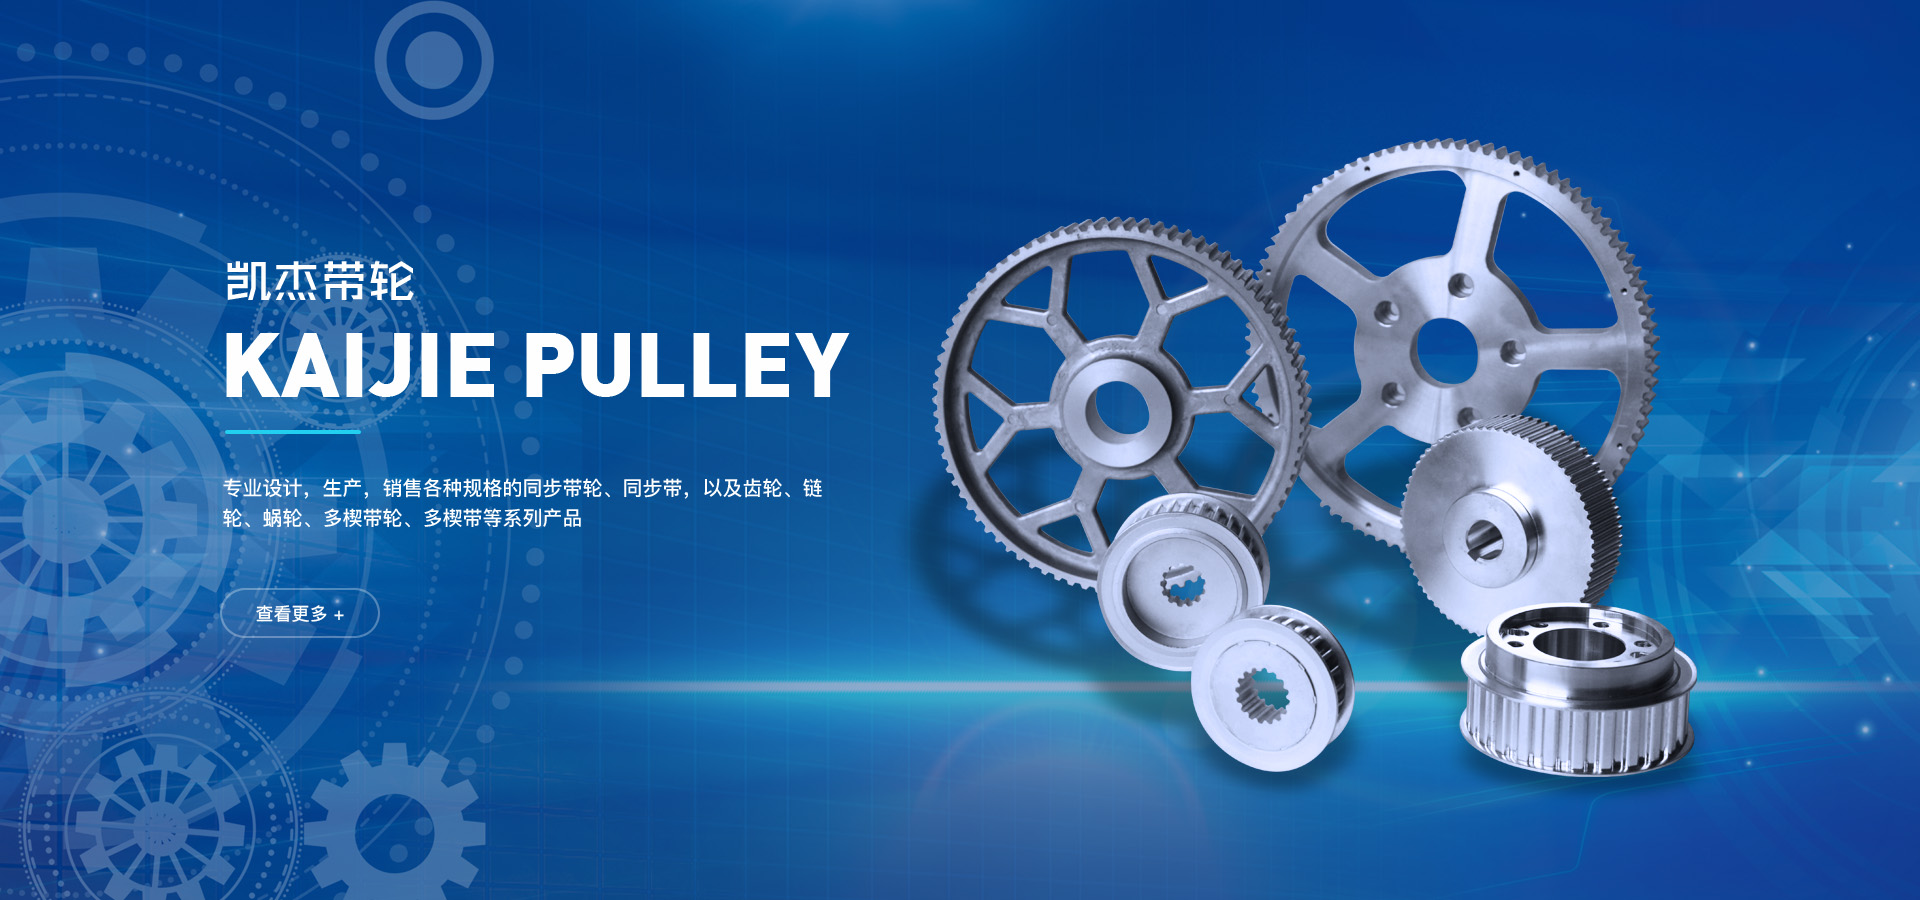 寧波凱杰帶輪有限公司專業生產各種規格的同步帶輪、同步輪、同步帶以及齒輪、鏈輪、蝸輪、多楔帶輪、多楔帶等系列產品。